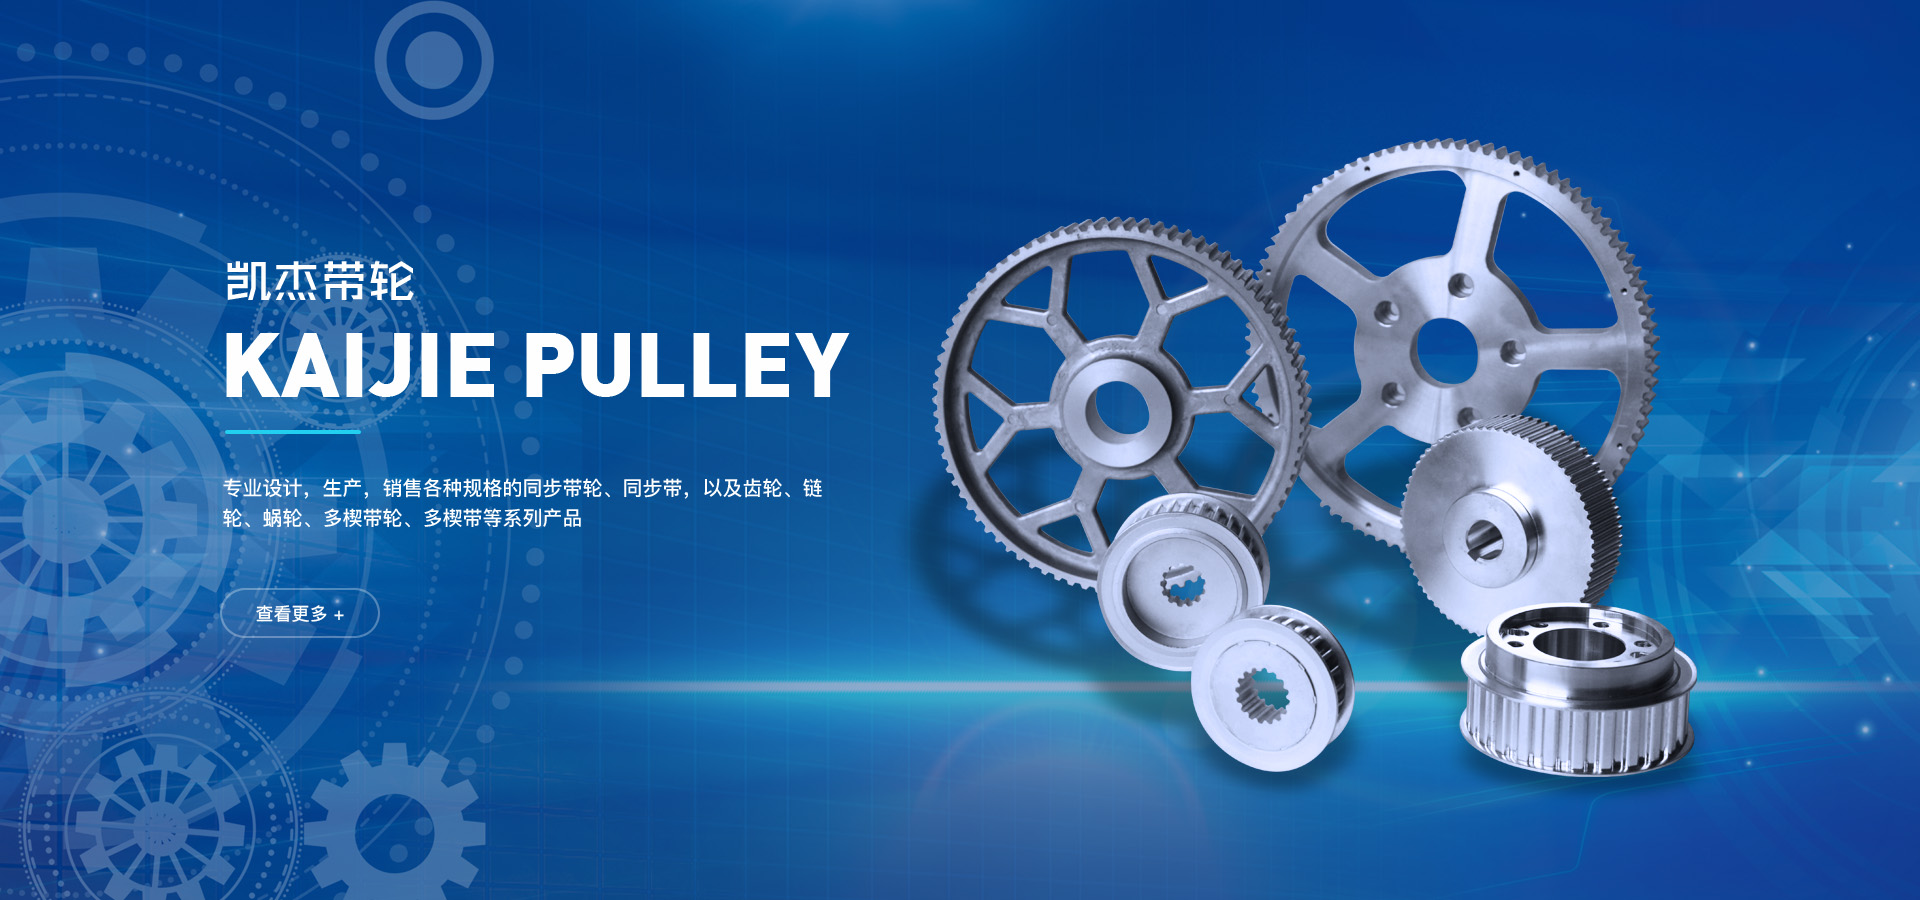 寧波凱杰帶輪有限公司專業生產各種規格的同步帶輪、同步輪、同步帶以及齒輪、鏈輪、蝸輪、多楔帶輪、多楔帶等系列產品。